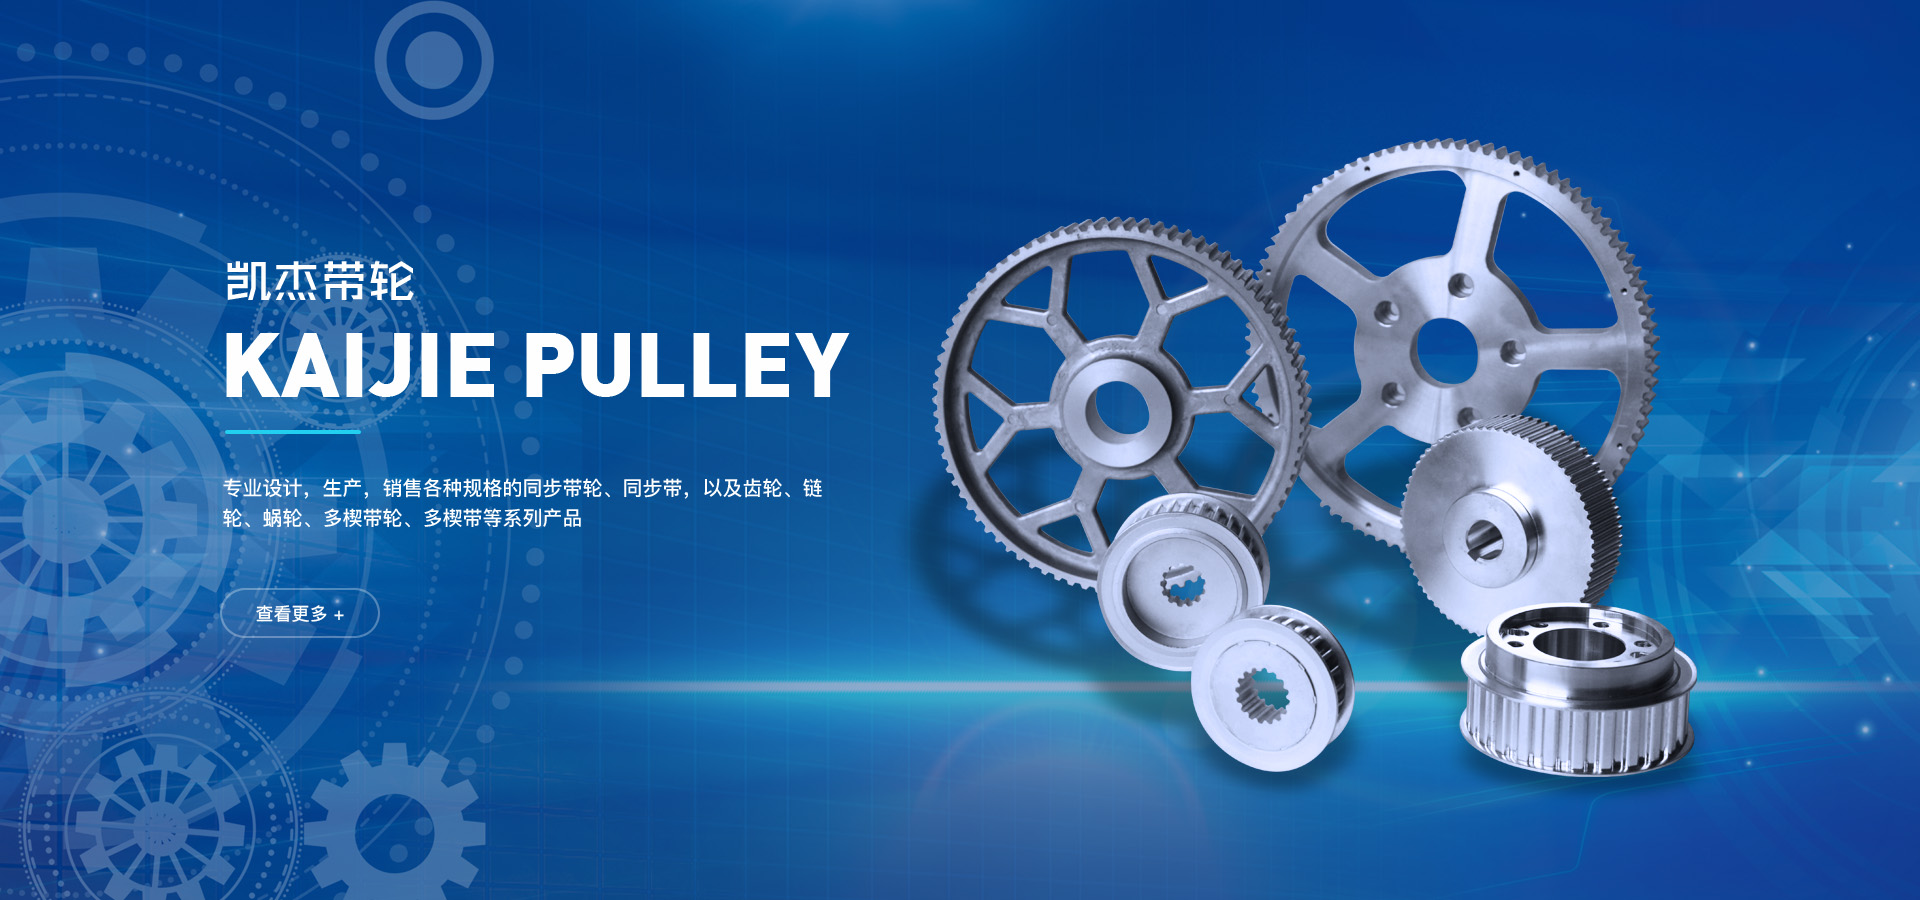 寧波凱杰帶輪有限公司專業生產各種規格的同步帶輪、同步輪、同步帶以及齒輪、鏈輪、蝸輪、多楔帶輪、多楔帶等系列產品。